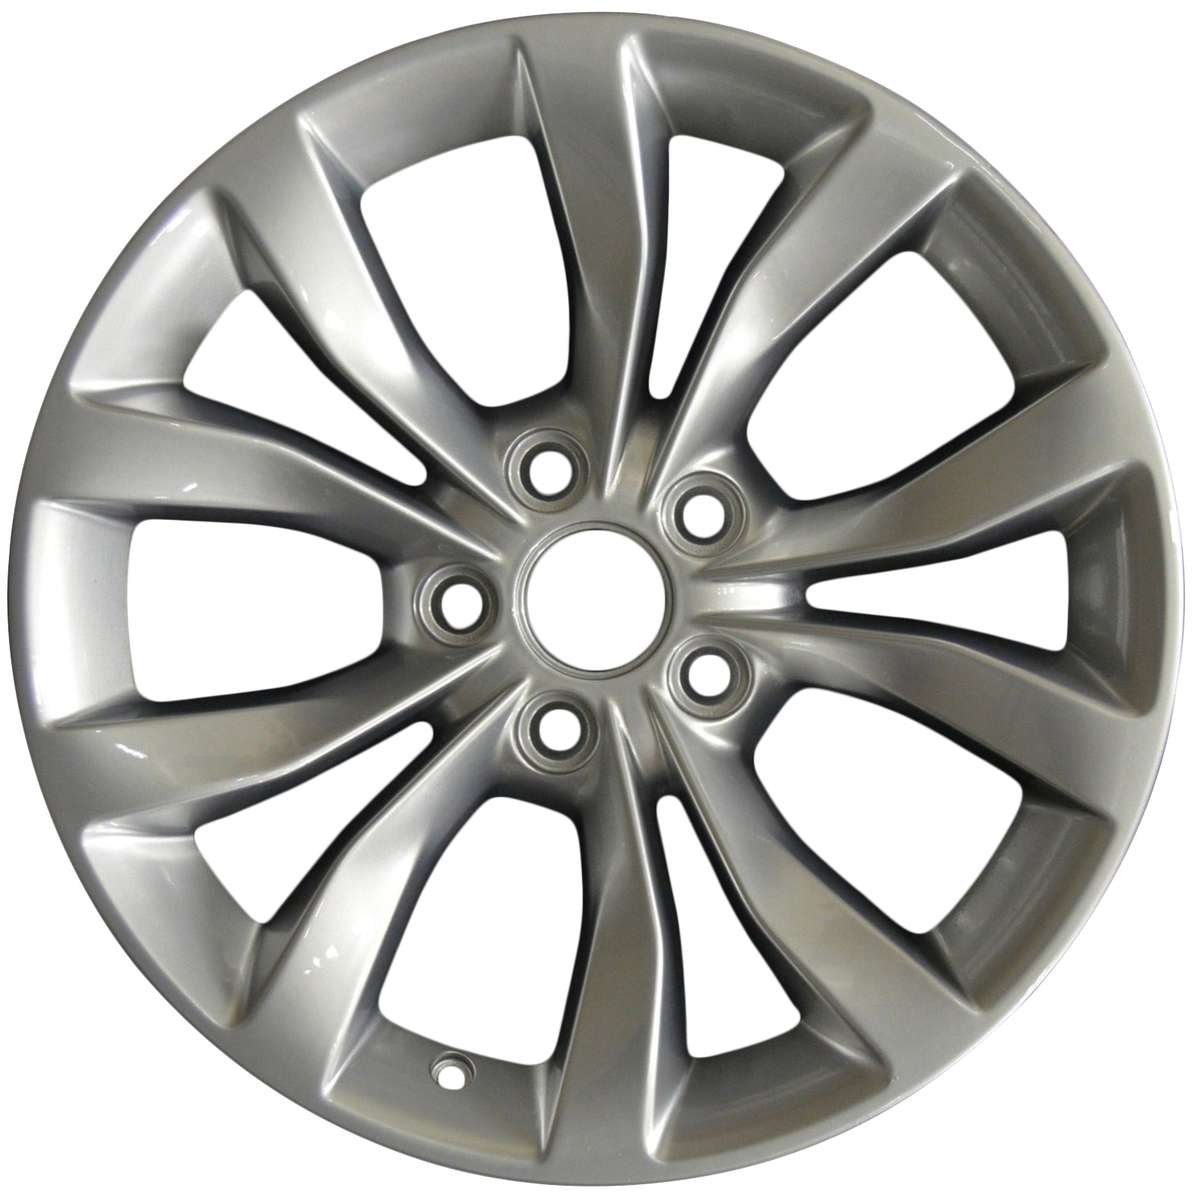 2020 Chrysler 300 17" OEM Wheel Rim W2535S